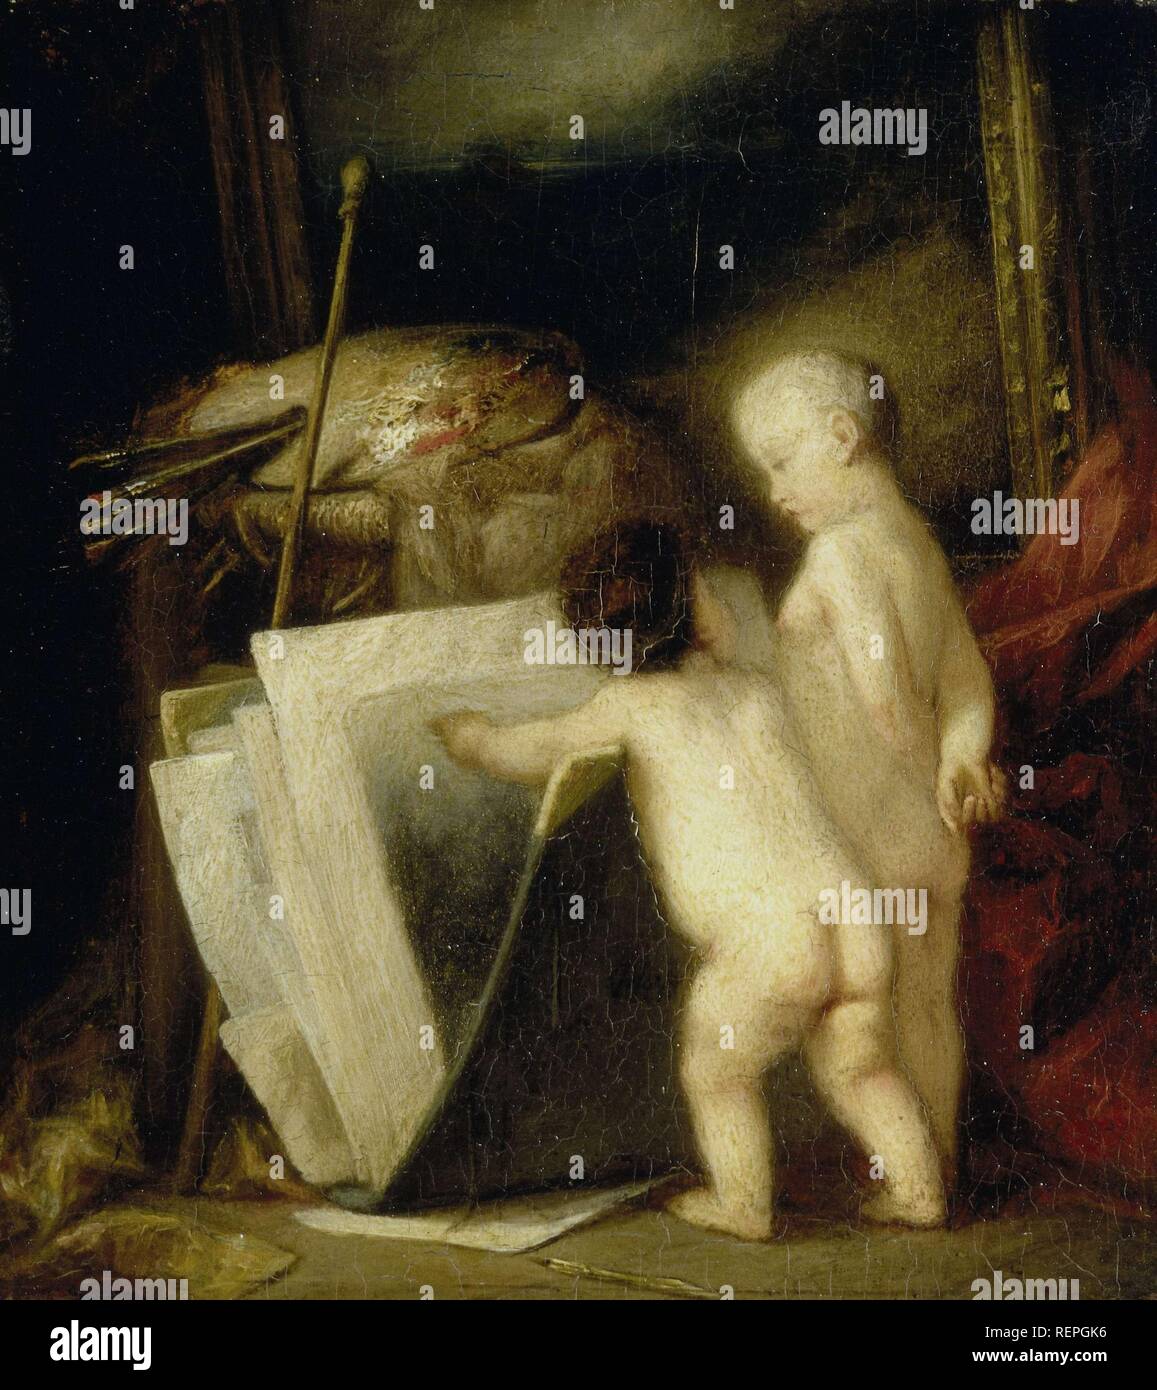 Los pequeños amantes del arte. Datación: 1840 - 1886. Mediciones: h 16,7 cm × h 17,7 cm × W 14,8 cm × w t × 15,7 cm 1,0 cm; d 5.2 cm. Museo: Rijksmuseum, Amsterdam. Autor: Hippolyte Michaud. Foto de stock